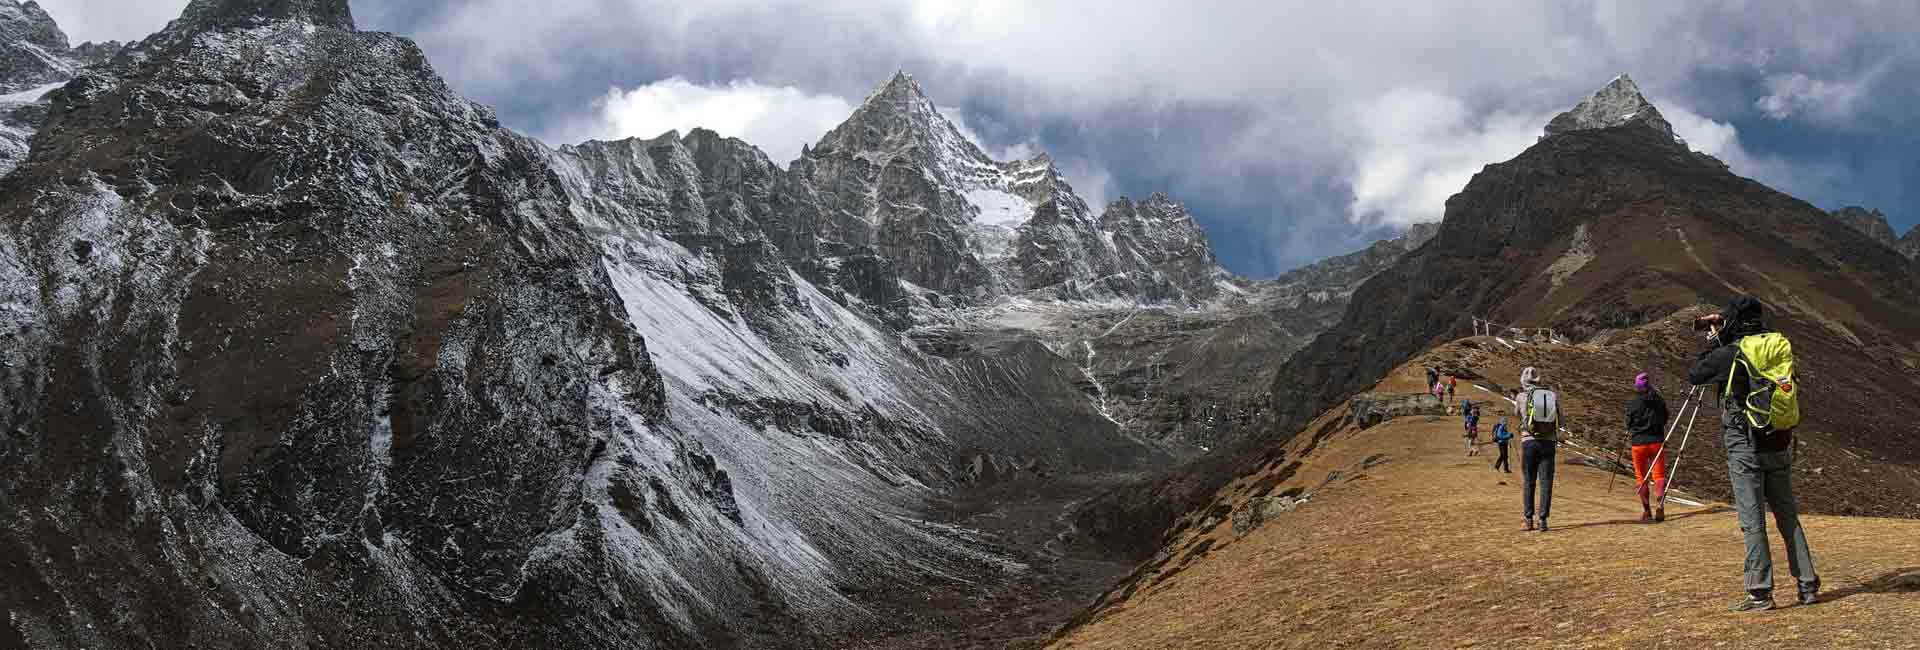 Tips for Trekking in Nepal